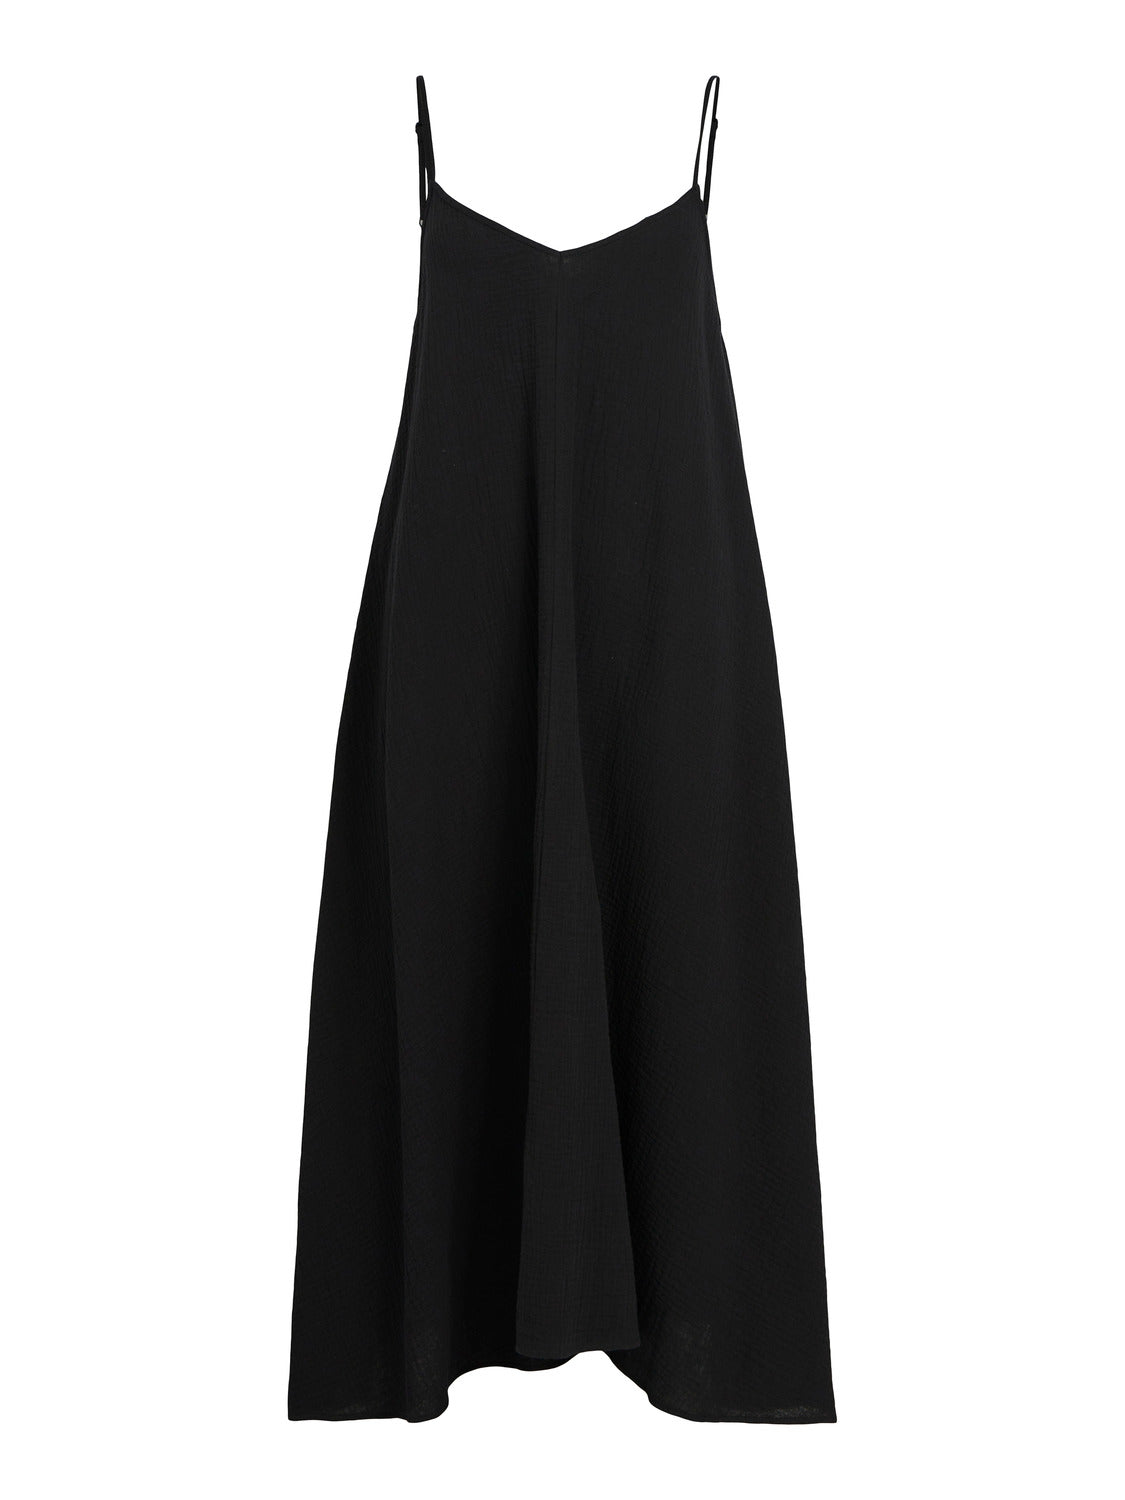 OBJCARINA Dress - Black